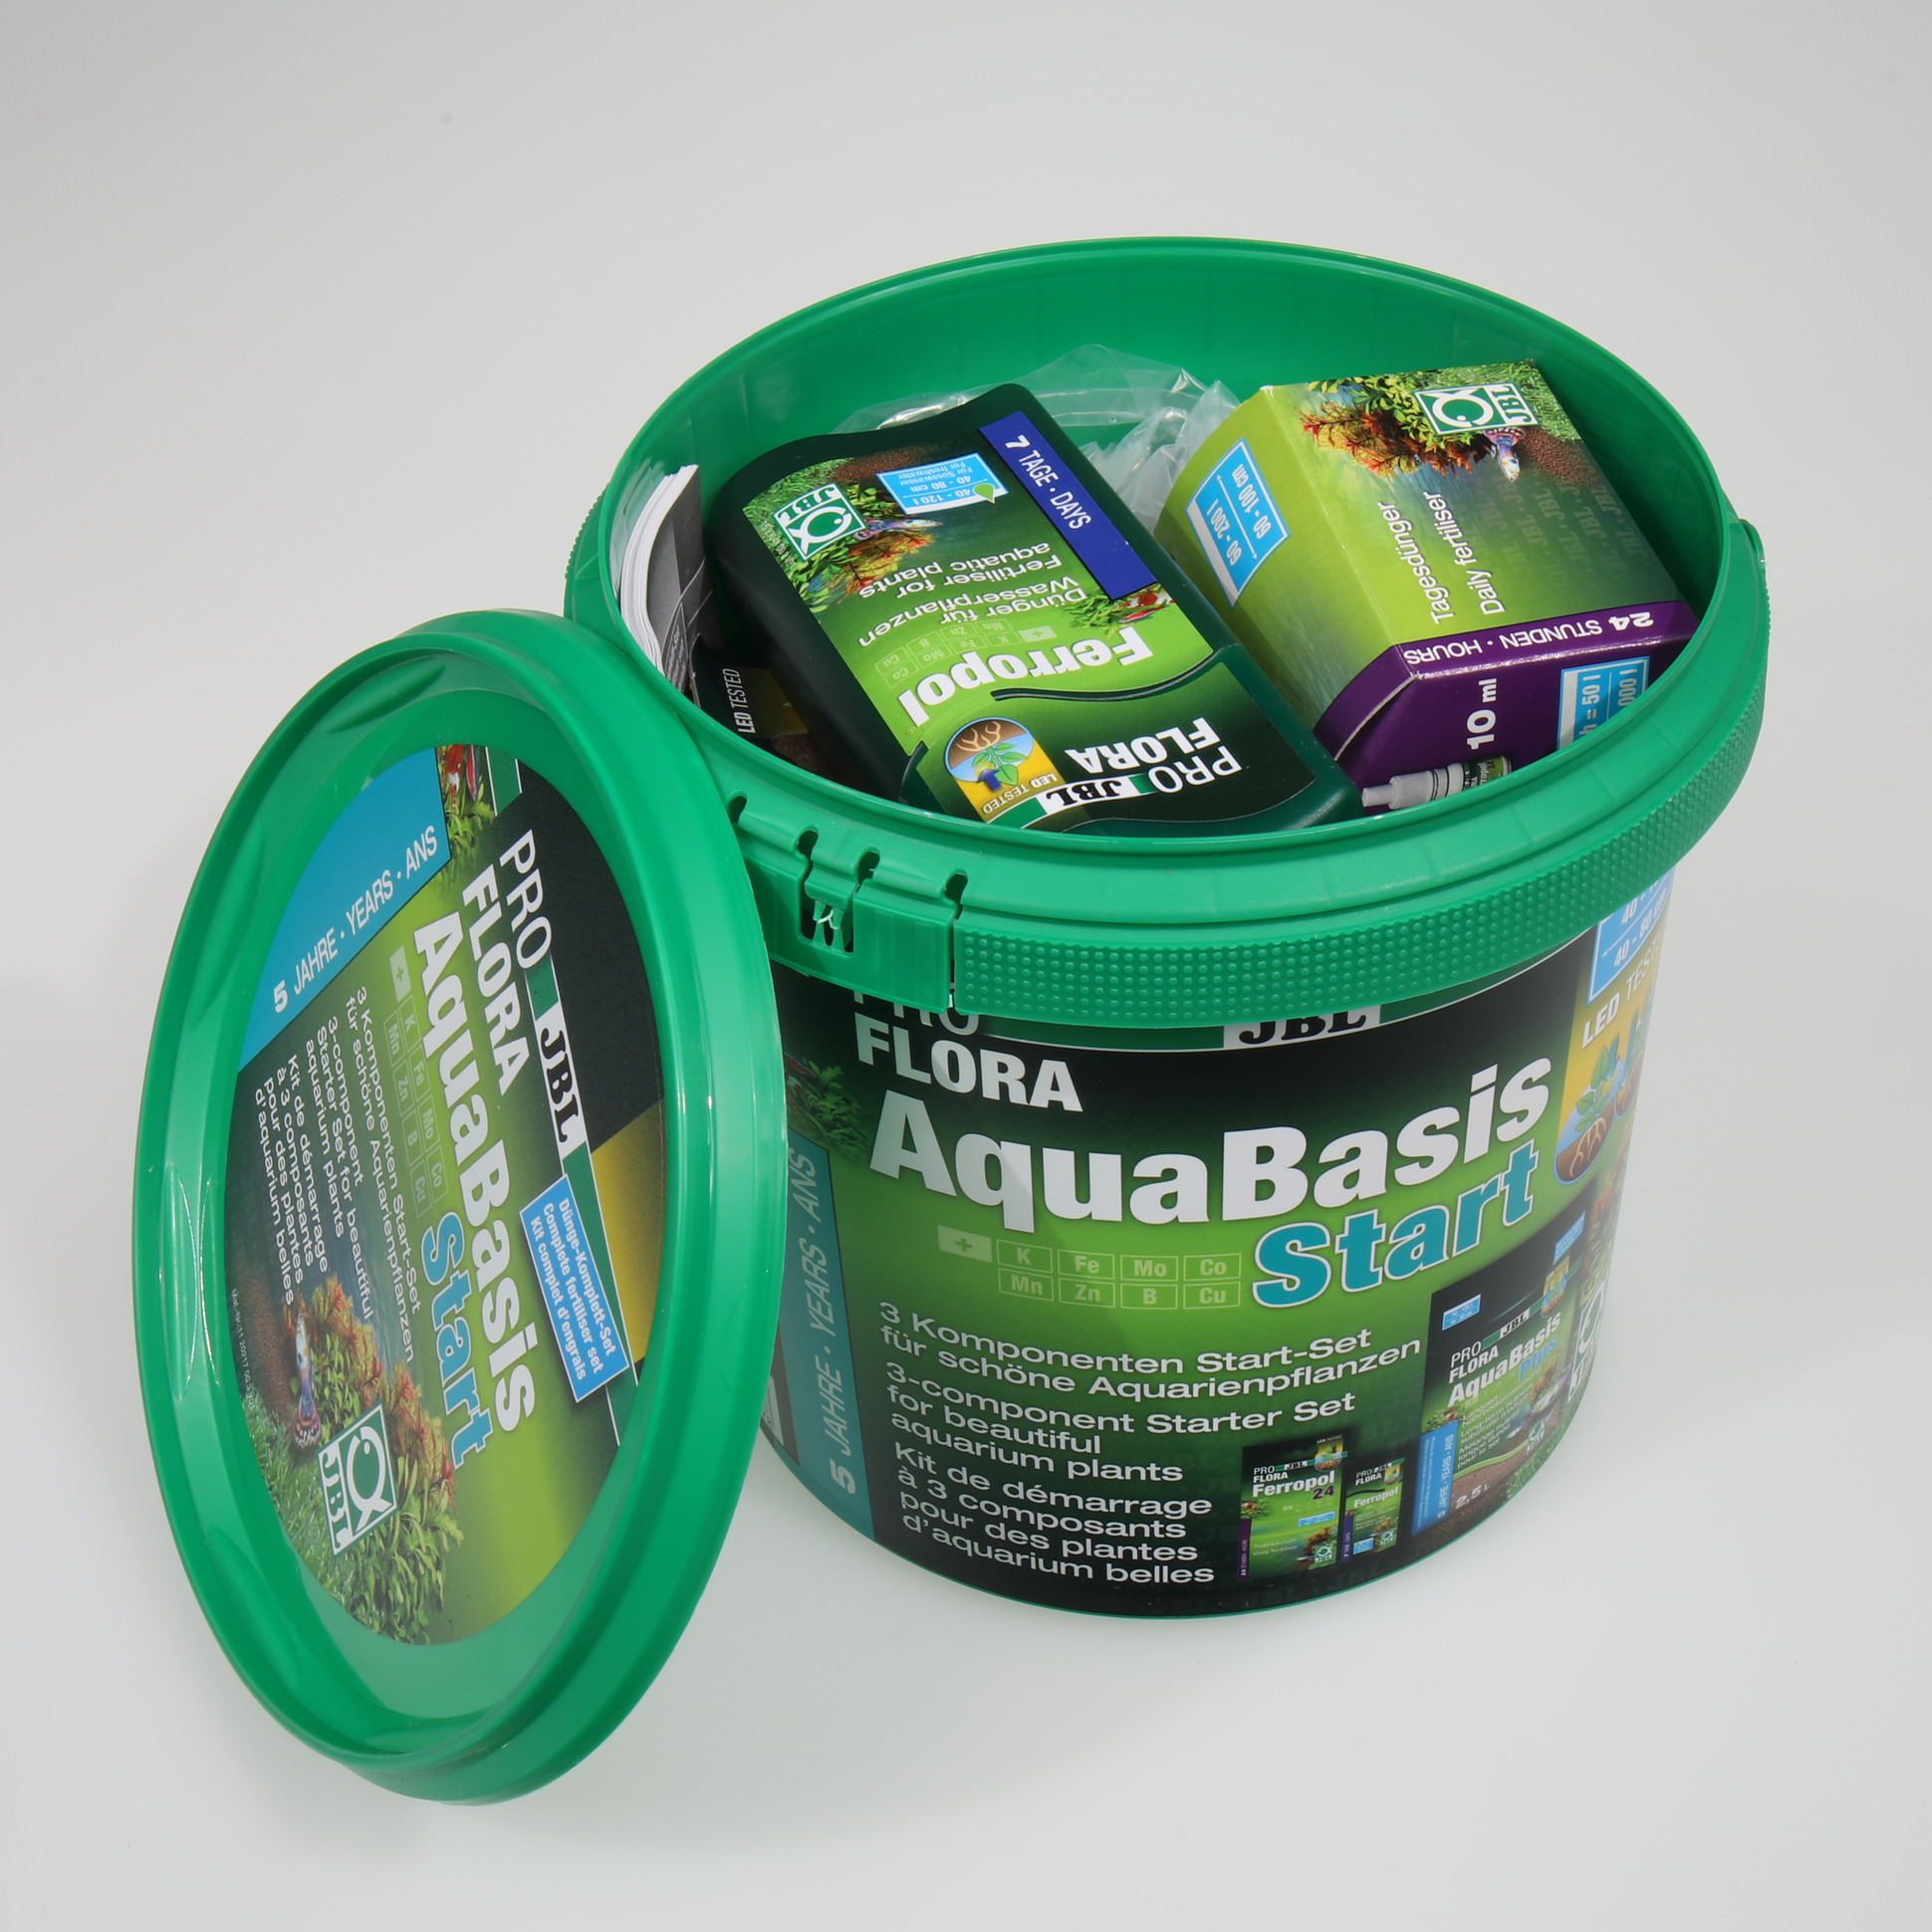 Engrais de démarrage en kit pour aquarium - Pro Flora Start - JBL